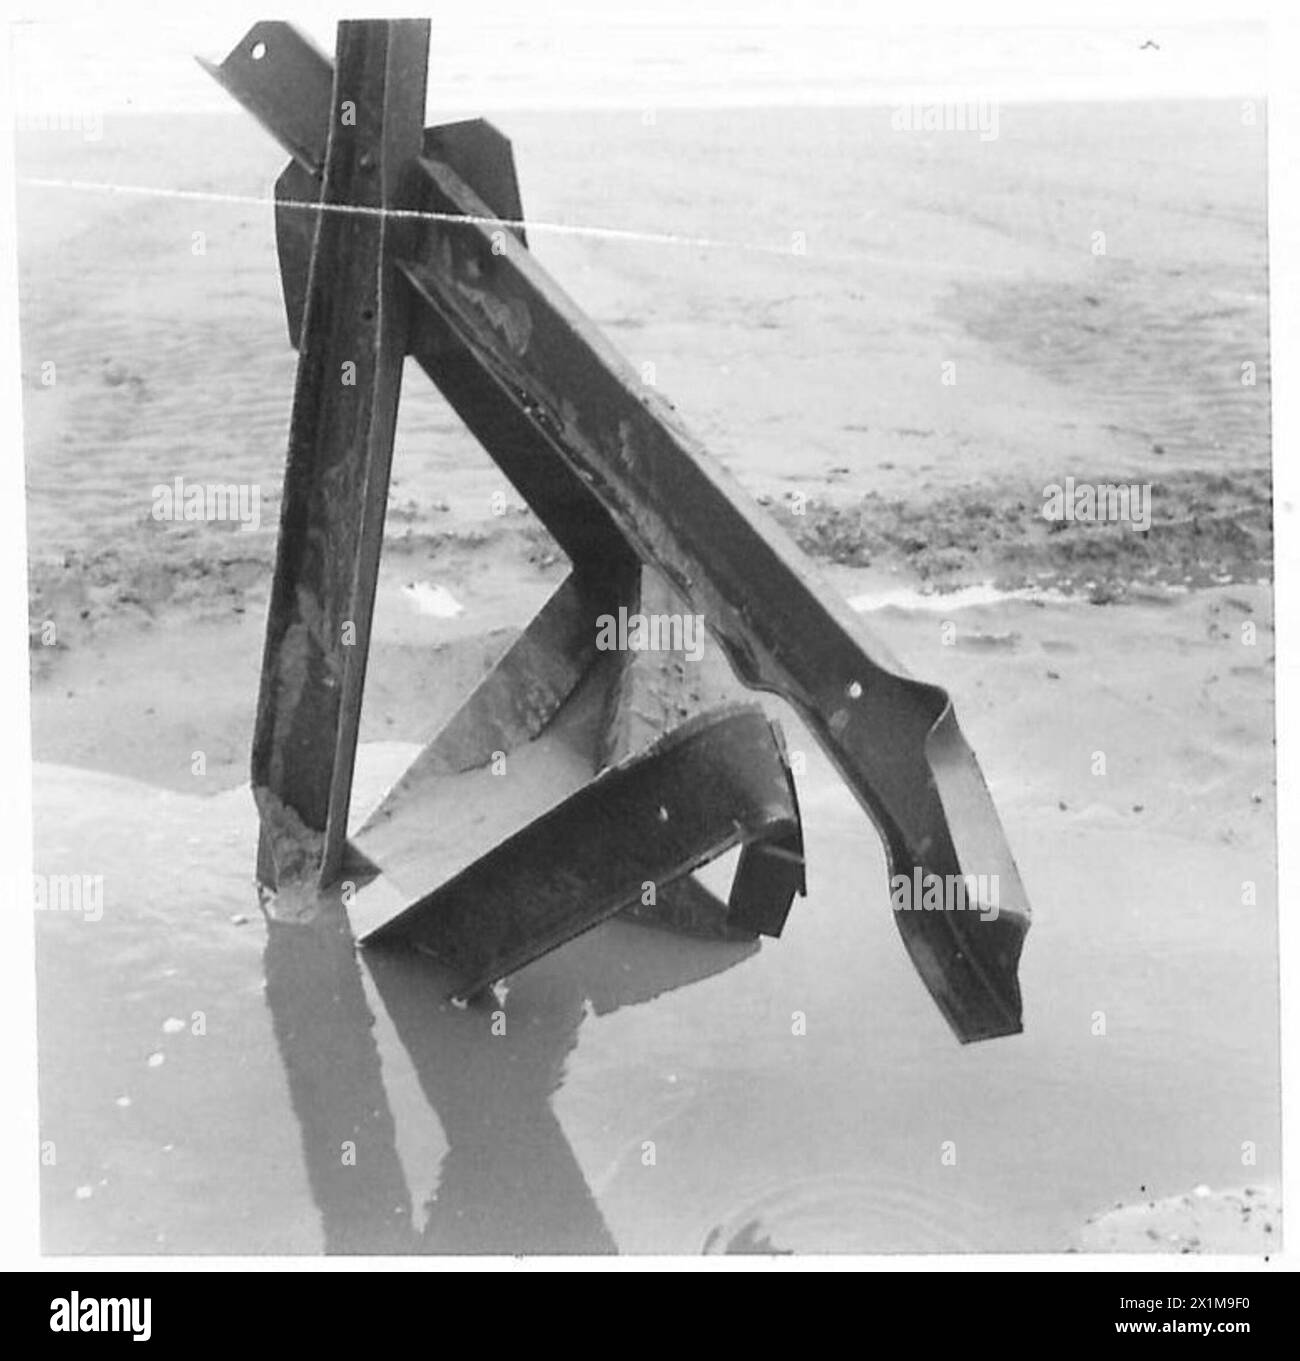 SONDERAUFTRAG FÜR 79. GEPANZERTE DIVISIONFLAIL-PANZER - Wirkung der Chruchill-Ladung beschädigter Grundplatte und Waffen, britische Armee Stockfoto